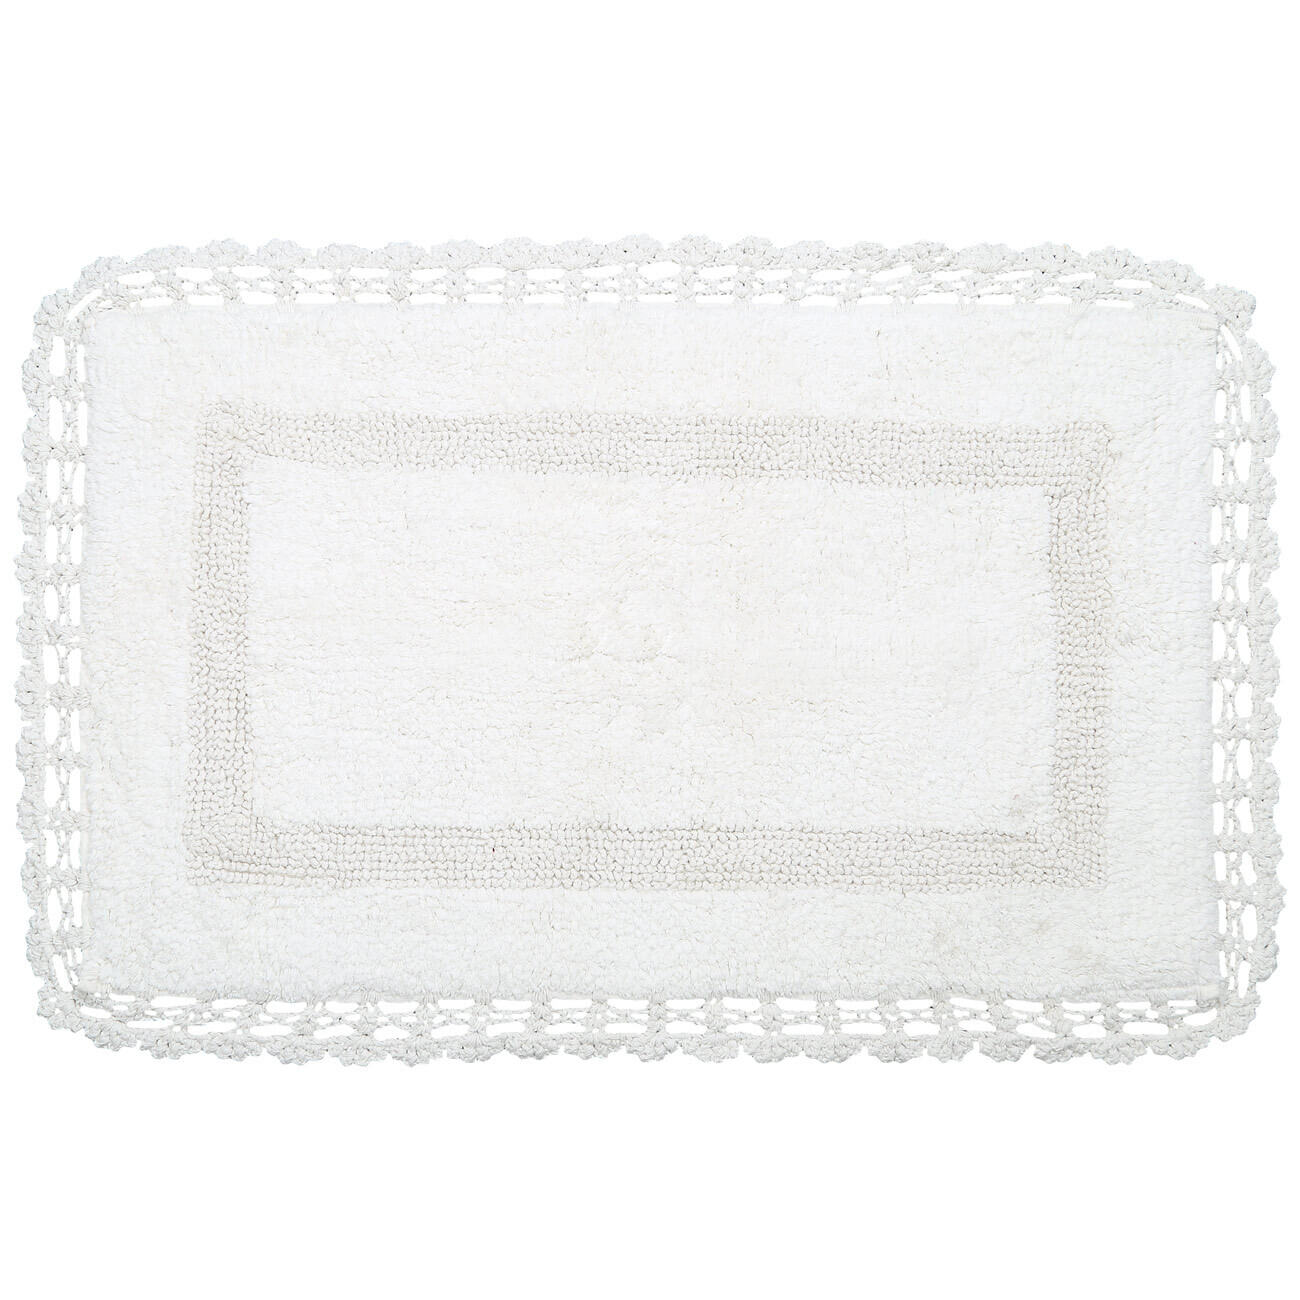 Mat, 50x80 cm, cotton, cream, Lace, Knit изображение № 1